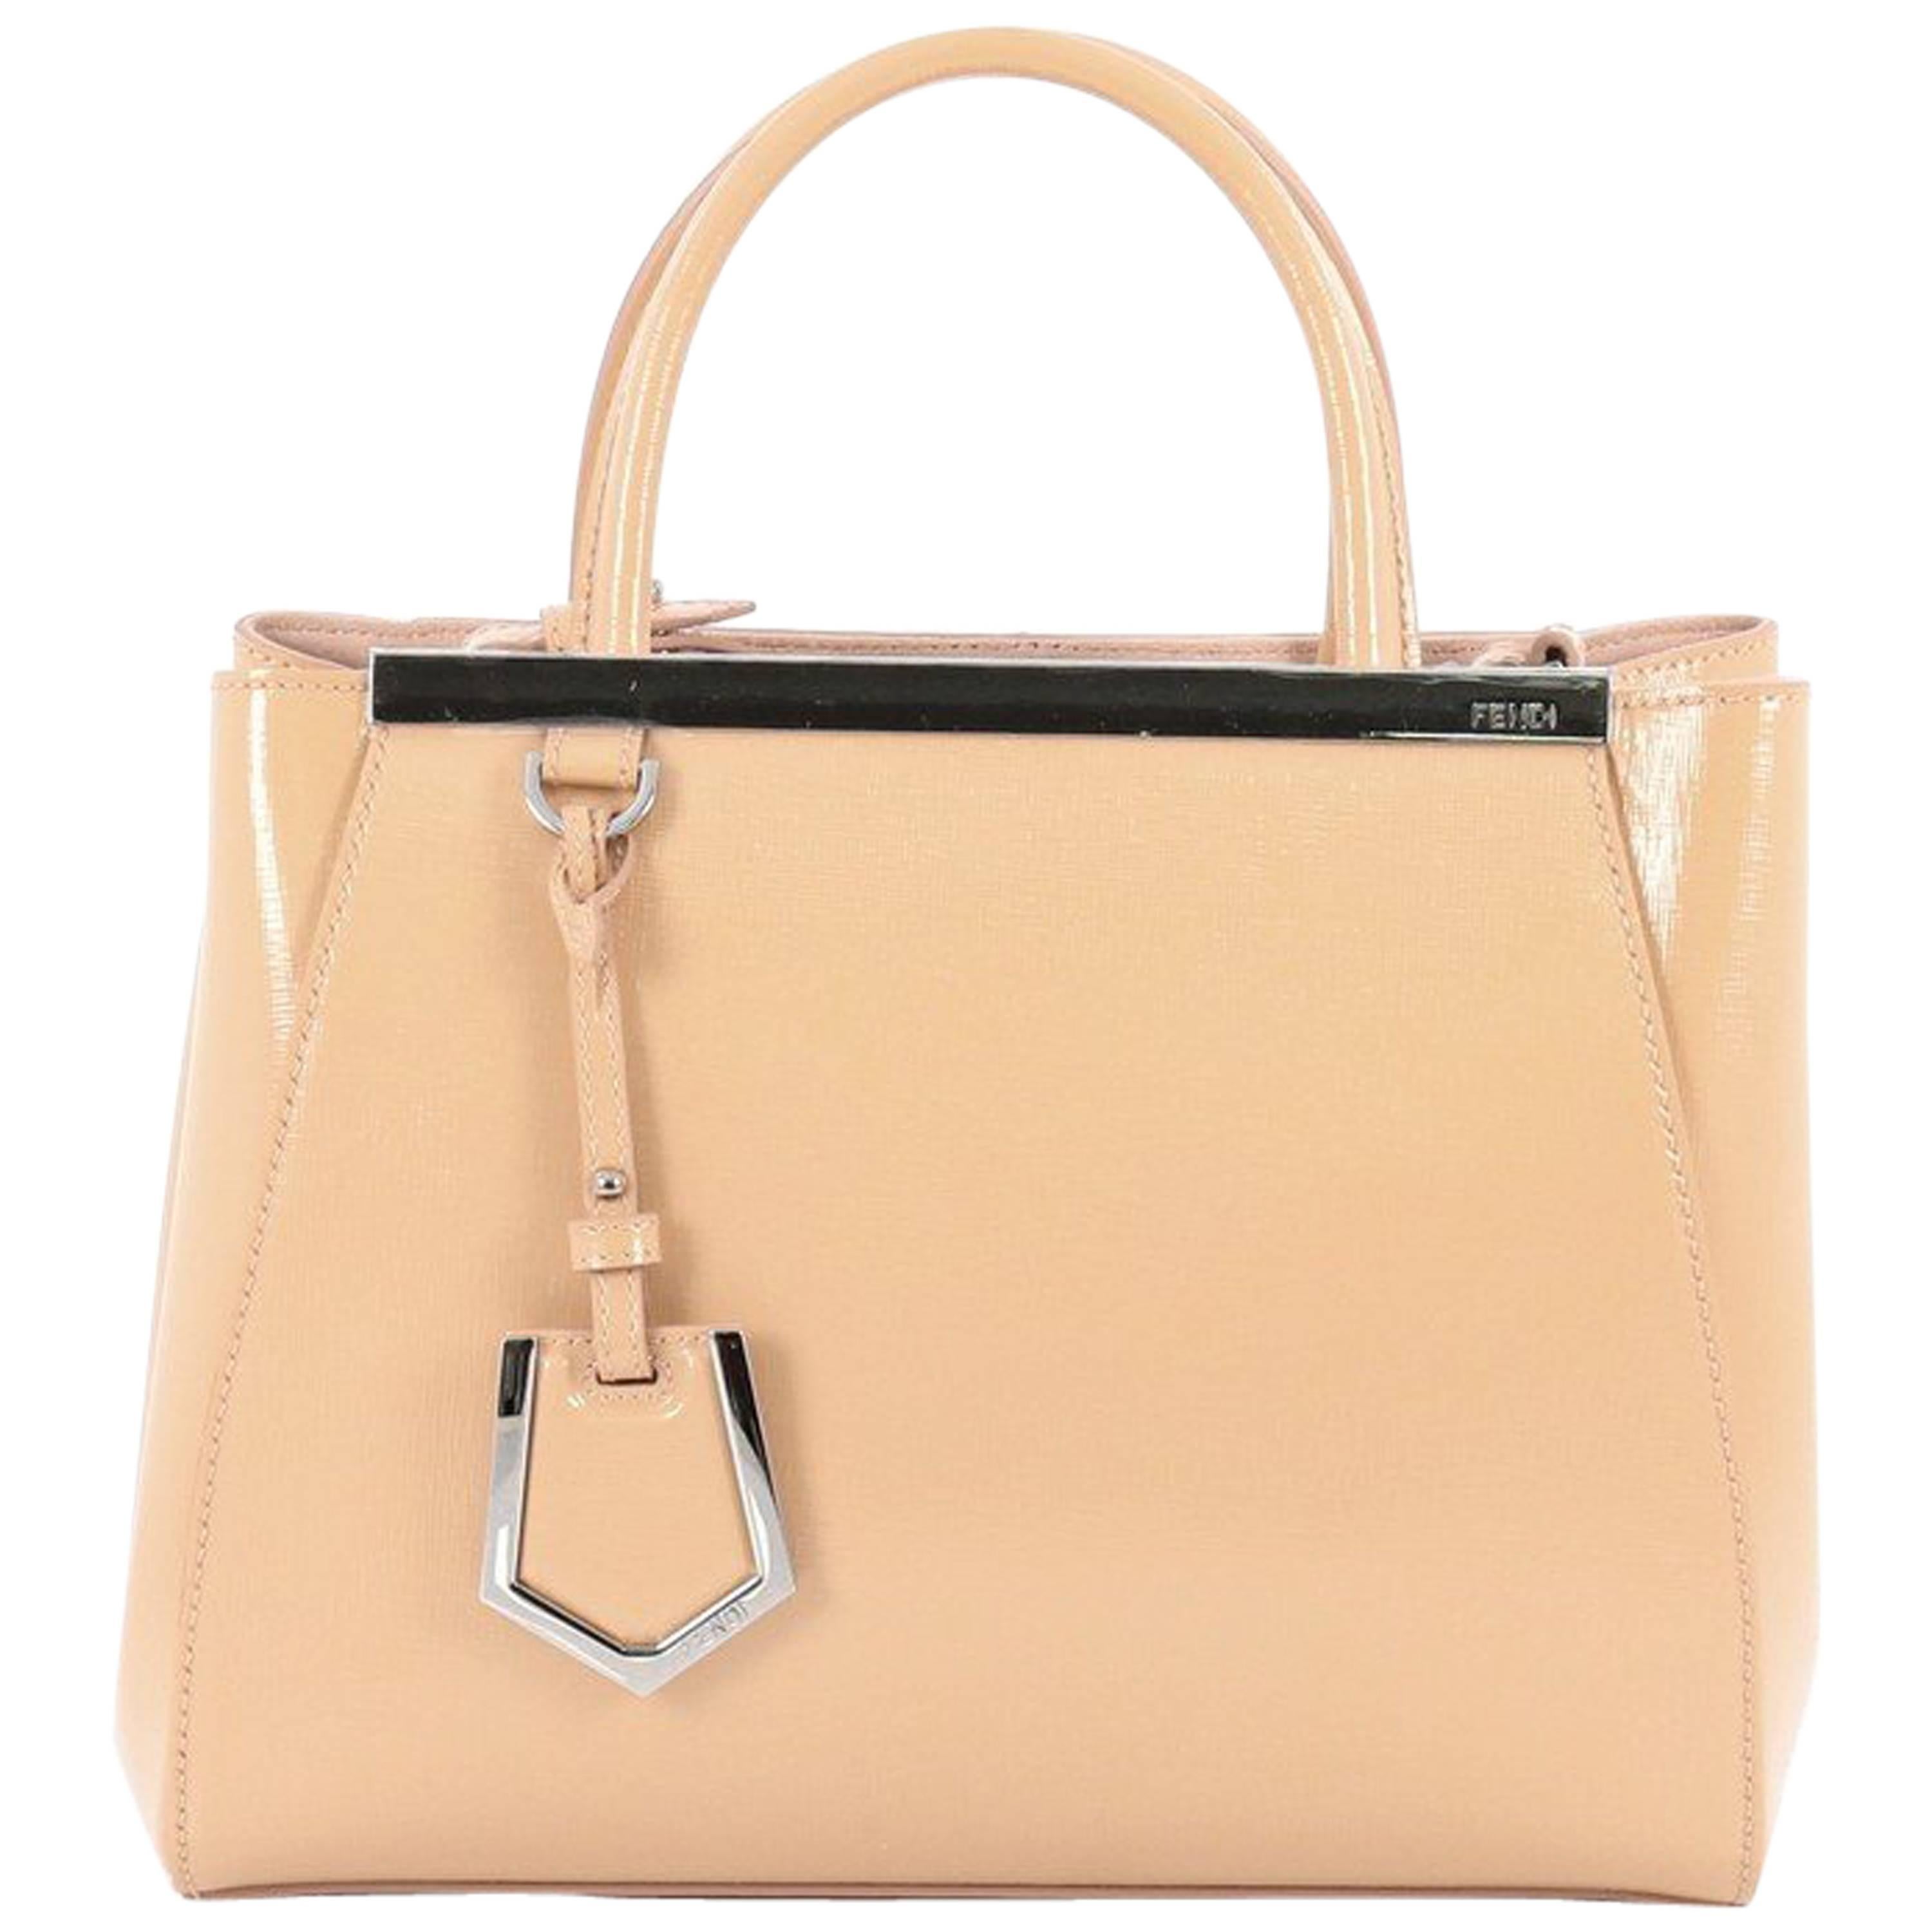 Fendi 2Jours Handbag Patent Petite